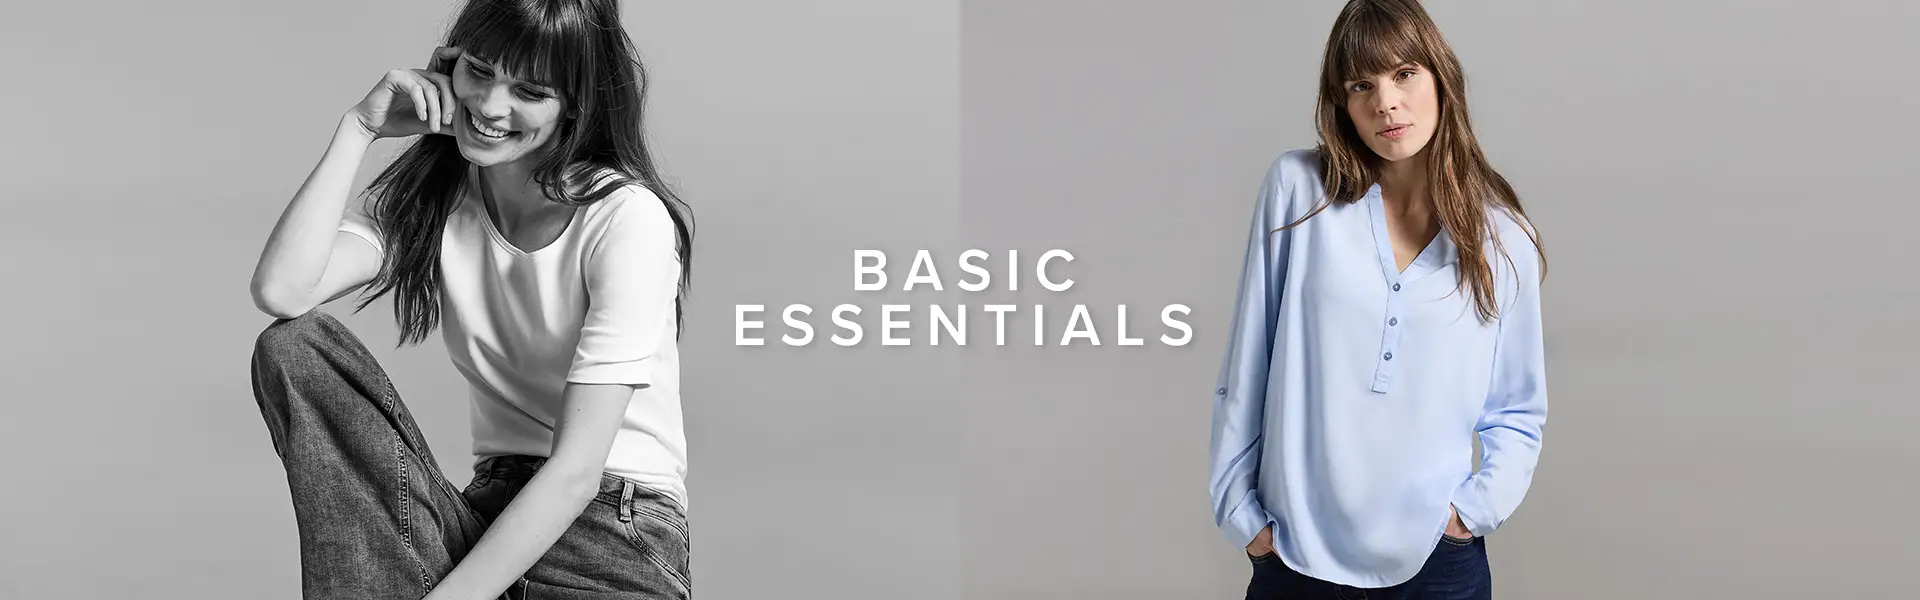 Basic Essentials Header1